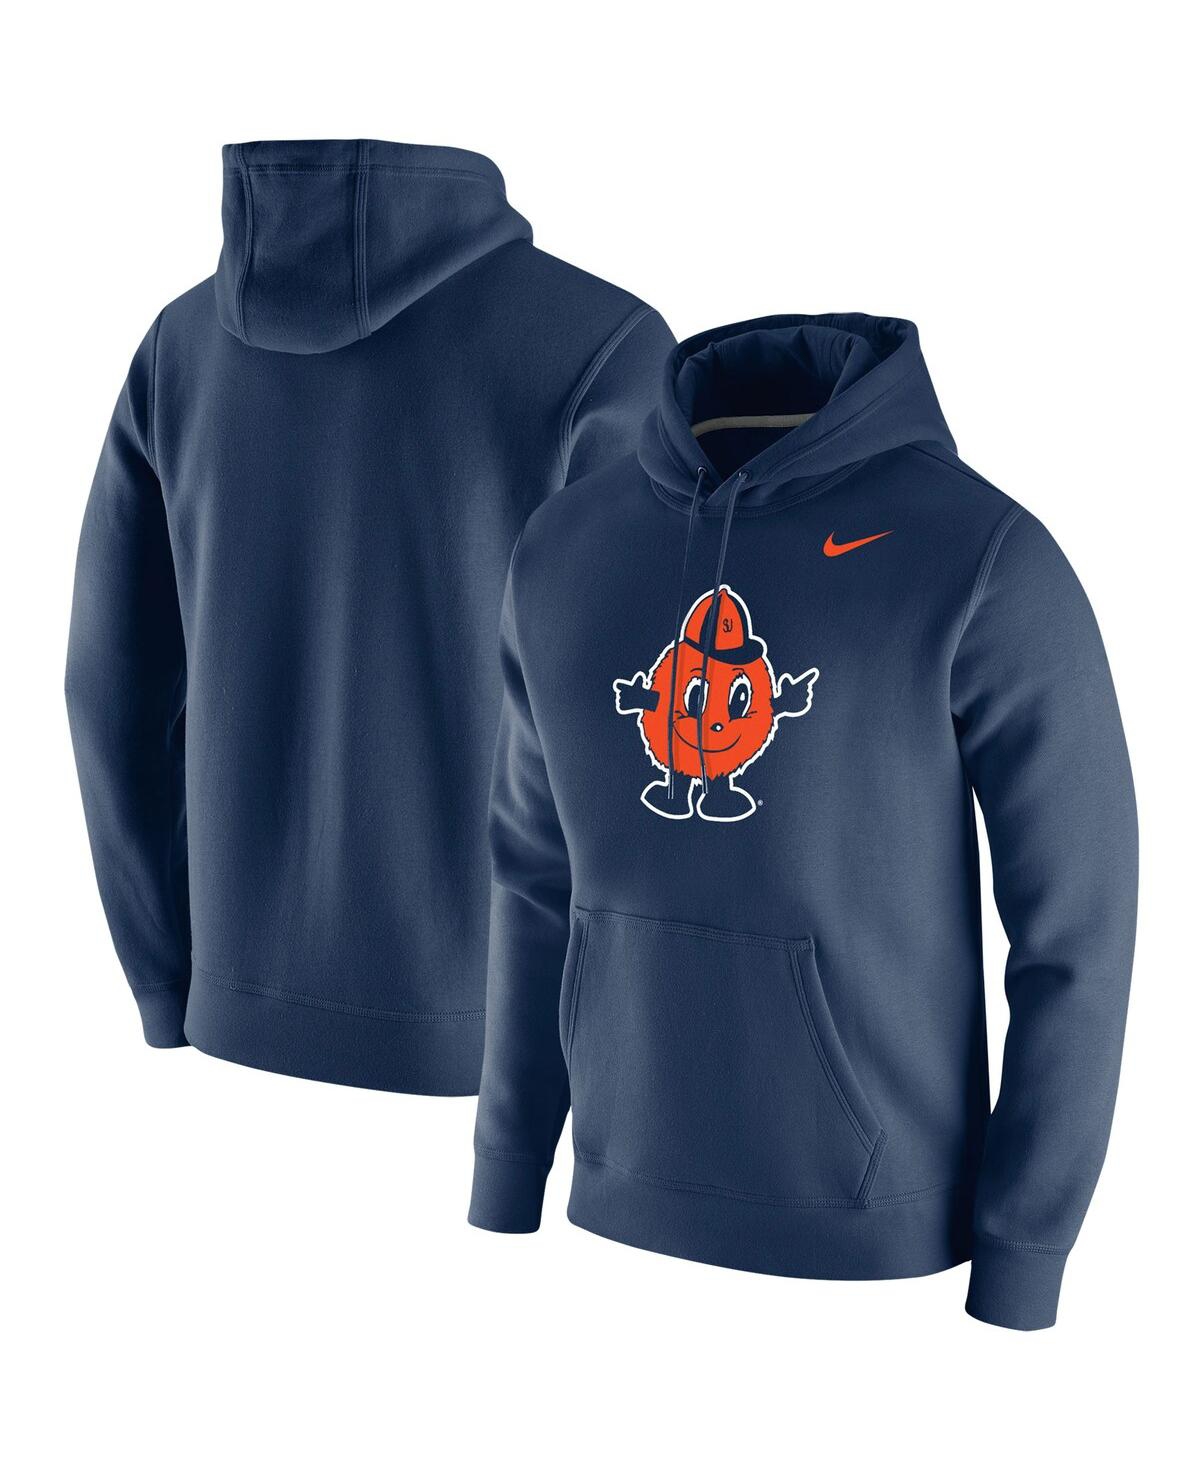 Shop Nike Men's  Navy Syracuse Orange Vintage-like School Logo Pullover Hoodie